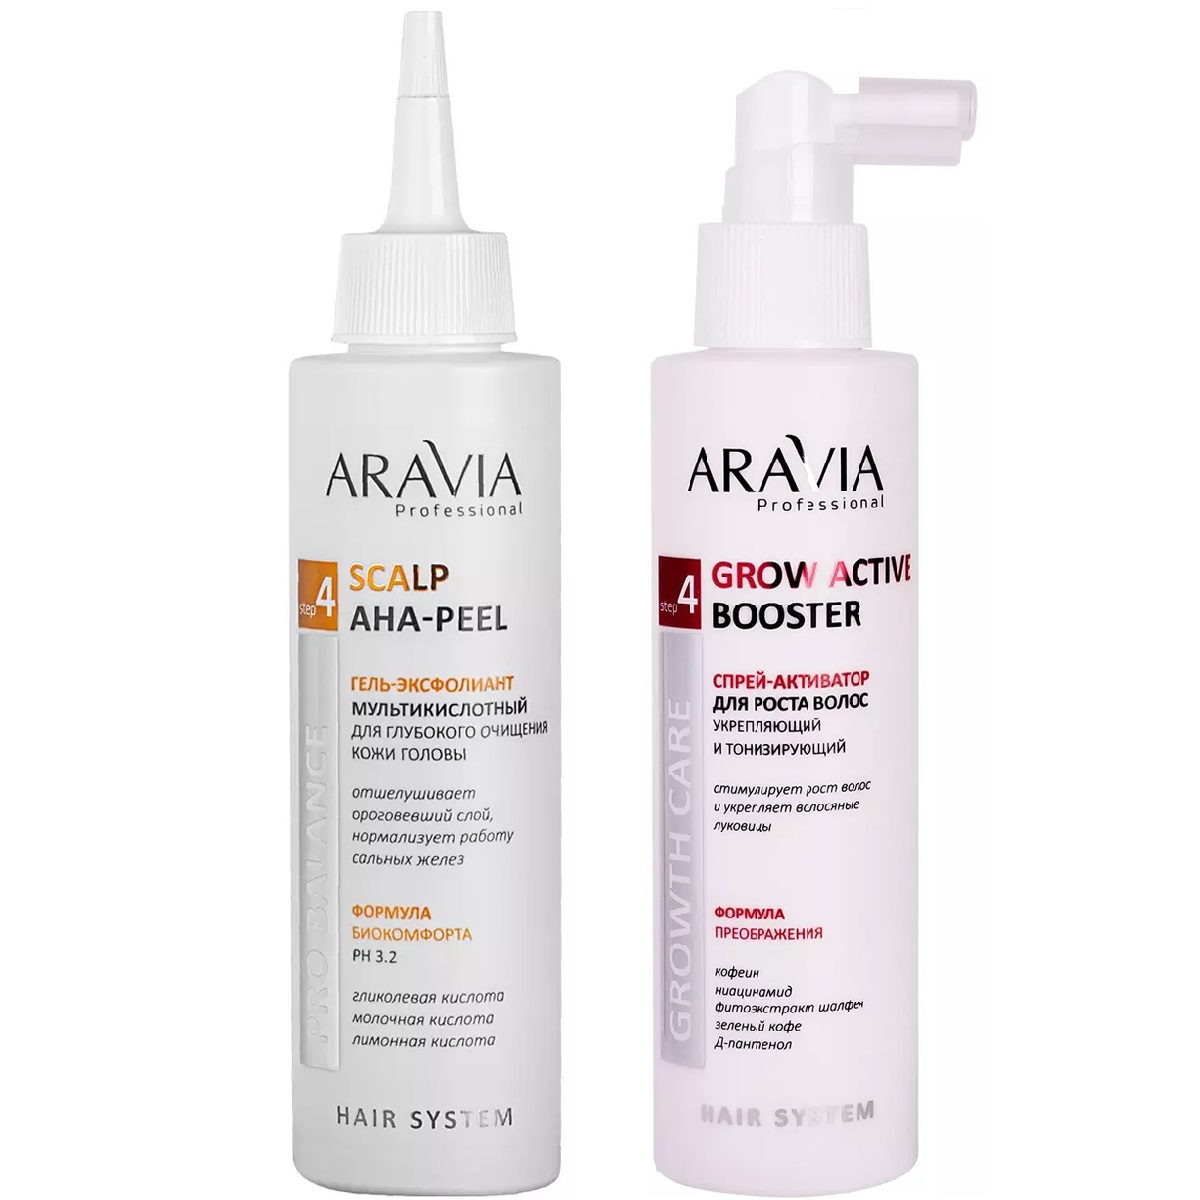 Aravia Professional Набор Очищение и укрепление: гель-эксфолиант, 150 мл + спрей-активатор, 150 мл (Aravia Professional, Уход за волосами)